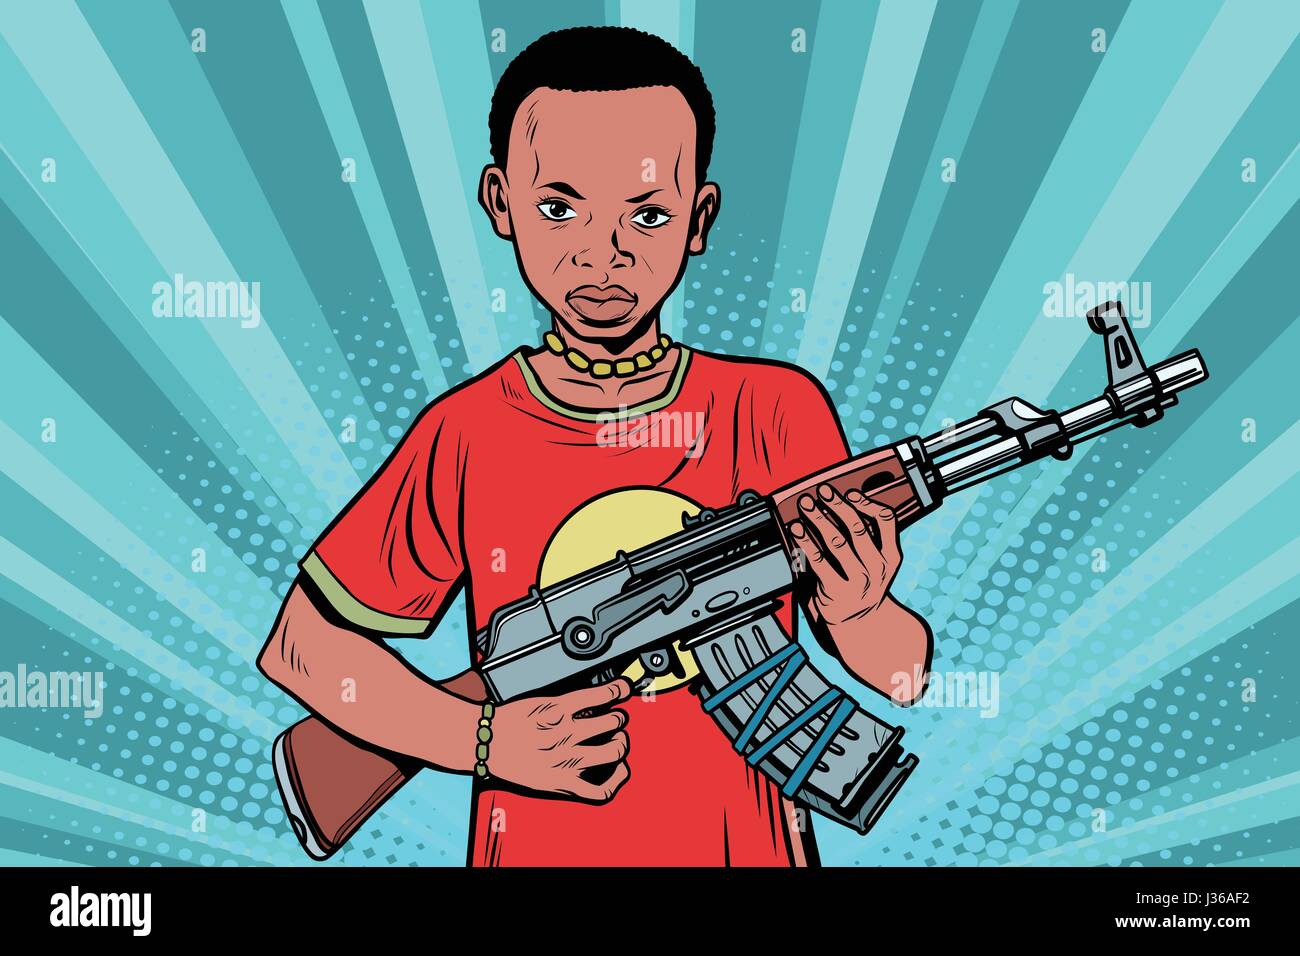 Afrikanischen jungen mit automatischen Waffen AKM. Comic-Cartoon-Stil Pop Art Retro-Vektorgrafik Stock Vektor